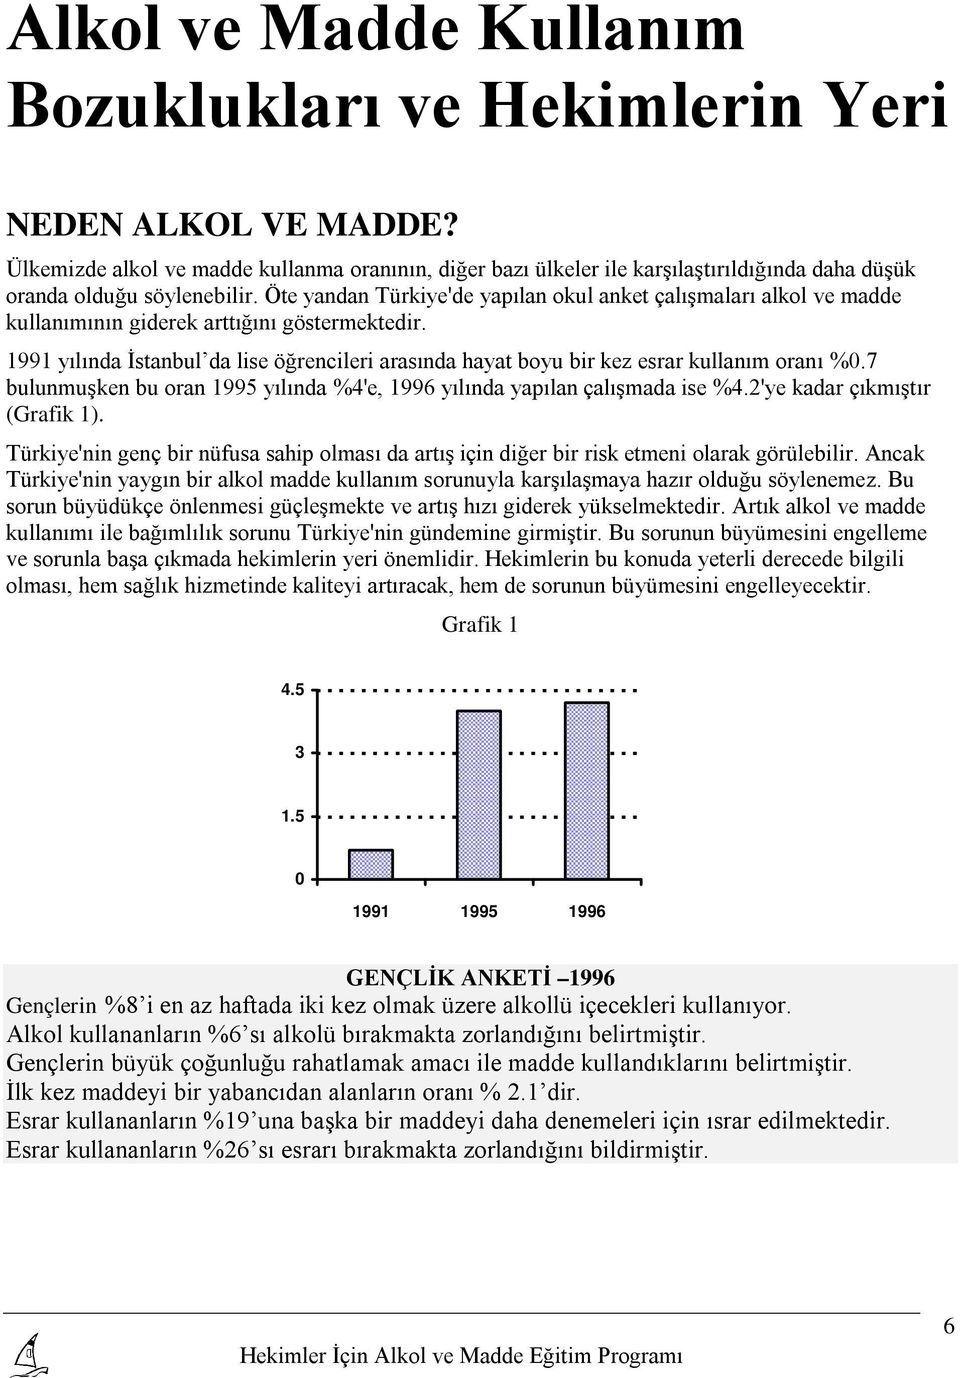 Öte yandan Türkiye'de yapılan okul anket çalışmaları alkol ve madde kullanımının giderek arttığını göstermektedir.